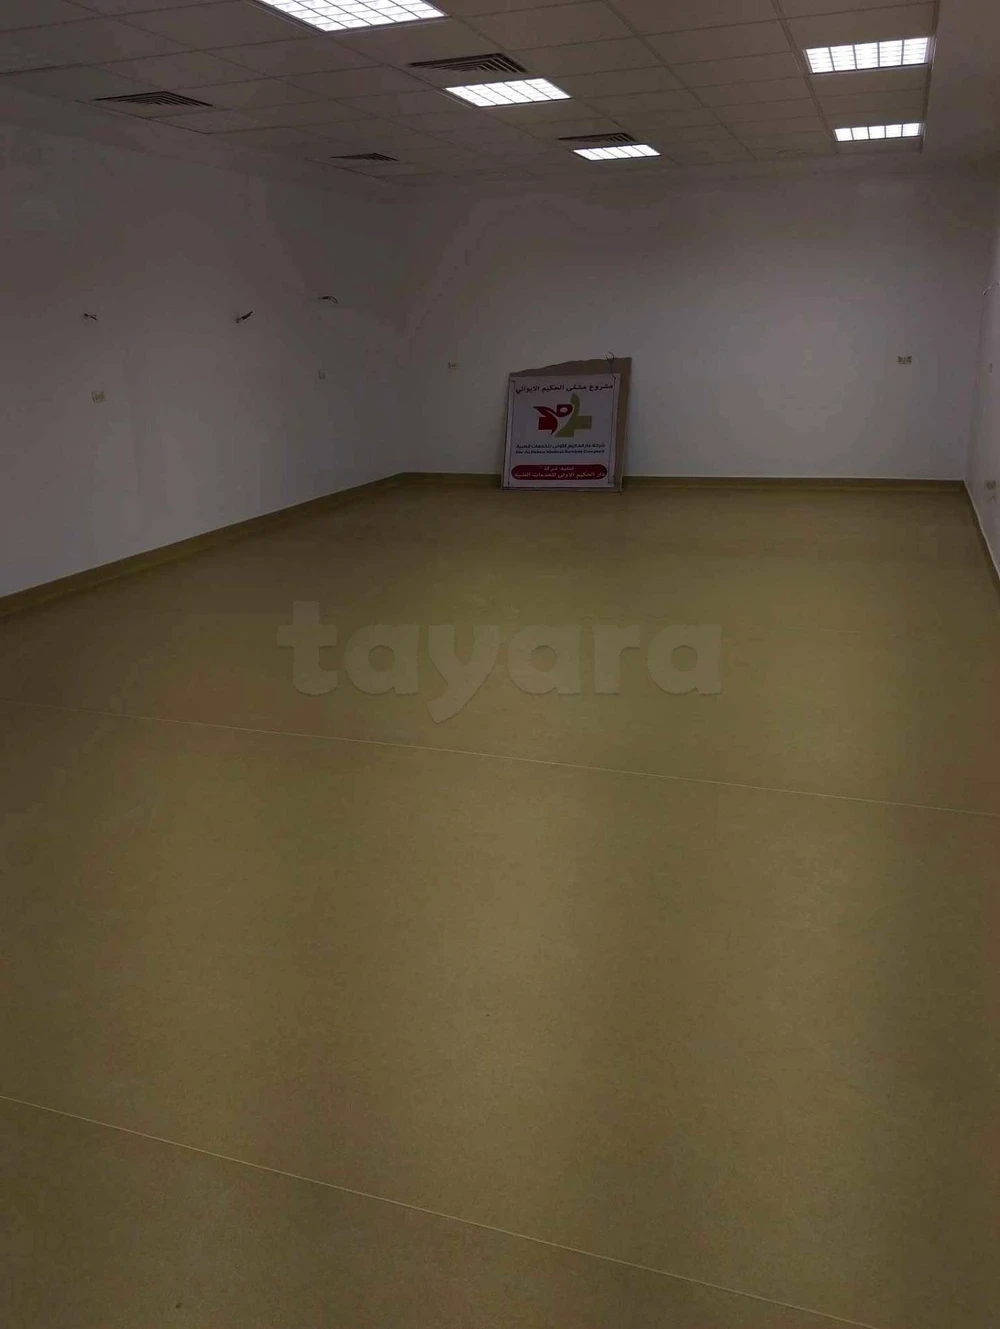 tayara - Selected image backdrop